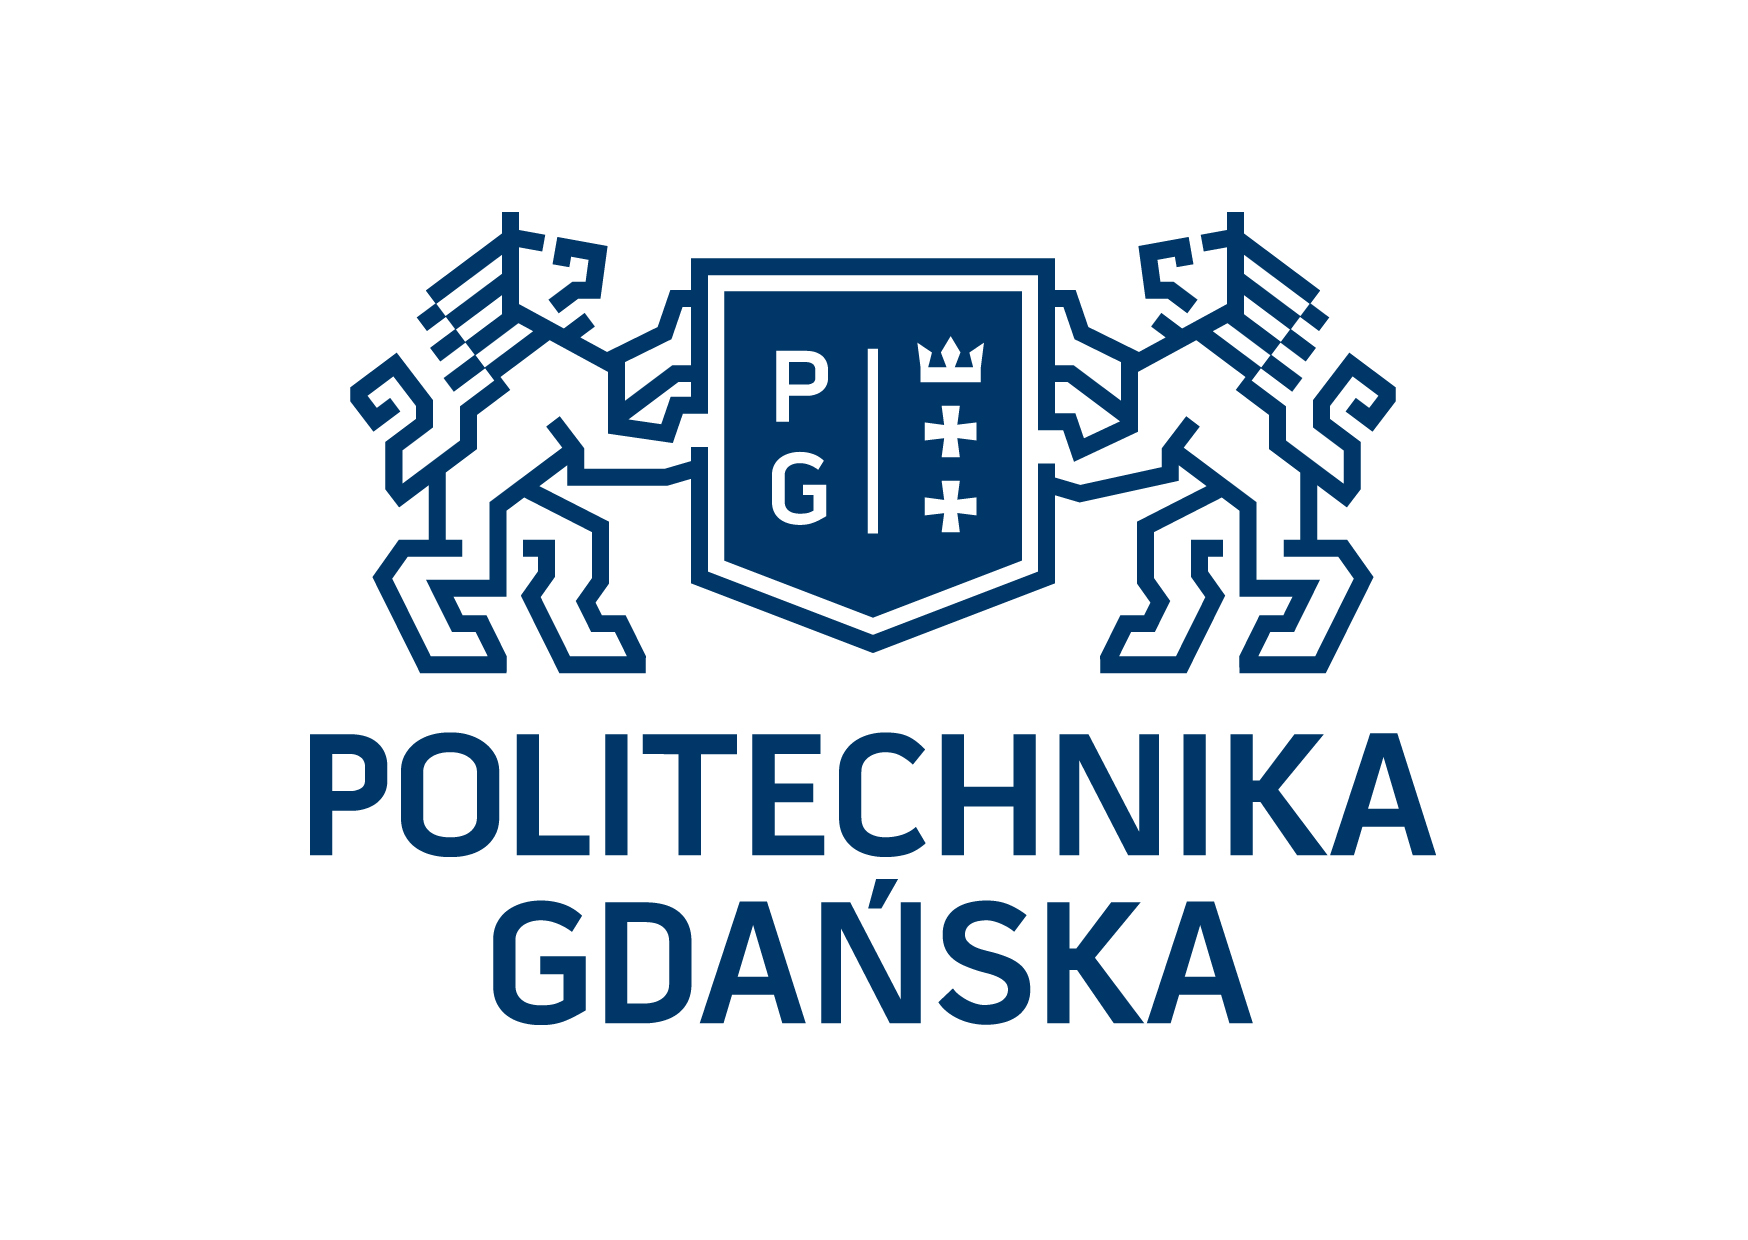 Politechnika Gdanska